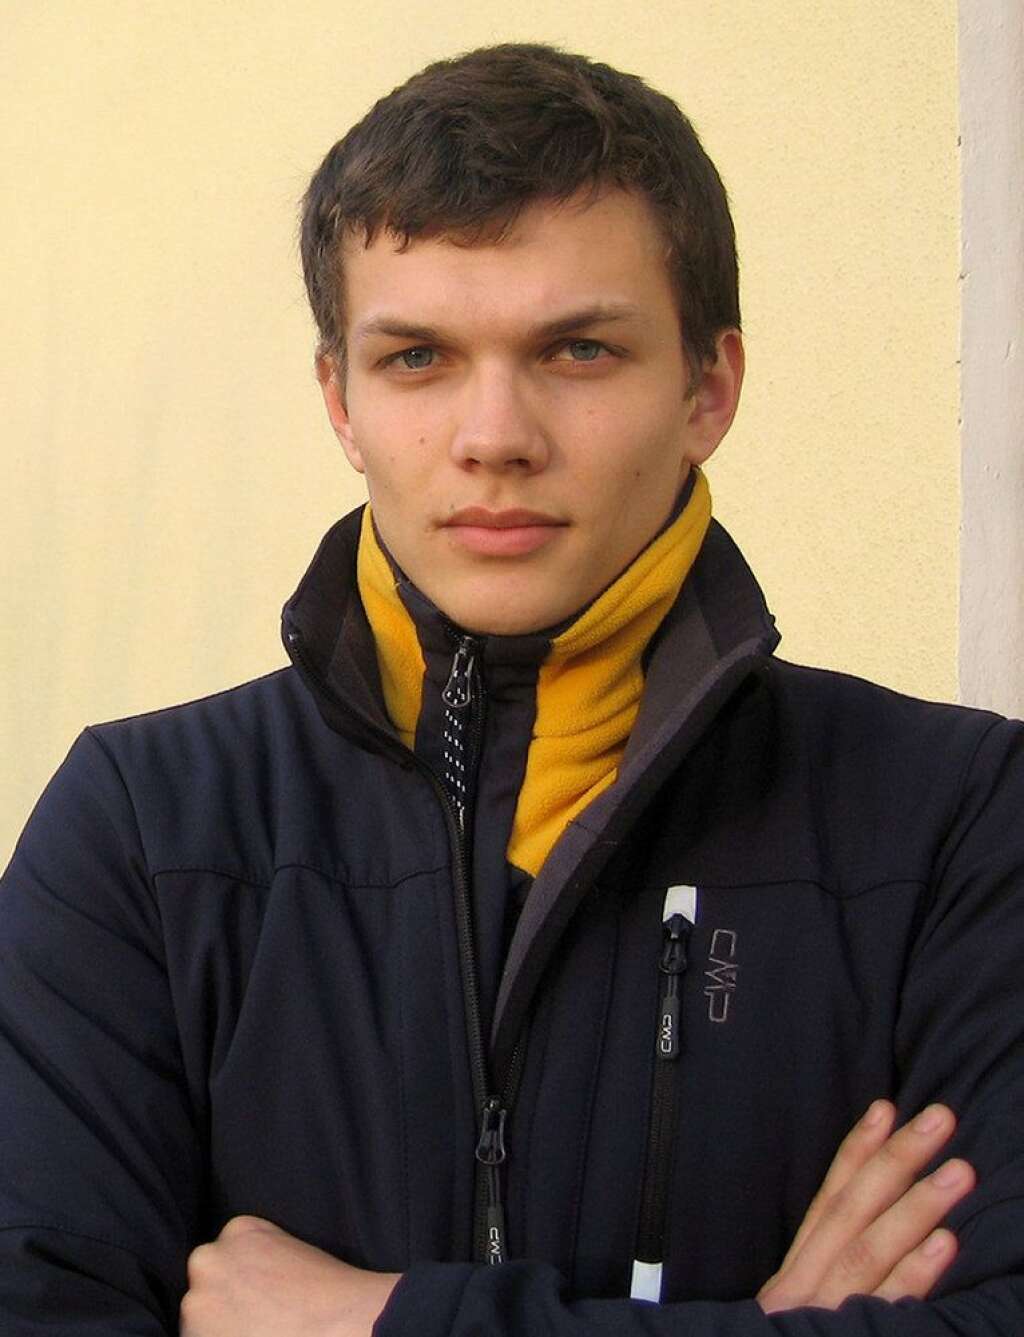 Le fils de l'entraîneur tadjik, Artem Voronov - Il a 20 ans et aucune chance de médaille. Mais il défendra gaillardement, seul, les chances de l'Ouzbékistan en ski alpin masculin: Artem Voronov, 20 ans, est le fils de l'entraîneur national.   S'il reconnaît que le lien entre la filiation et sa qualification aux JO d'hiver est sur toutes les lèvres, le skieur affirme qu'il devra bien sa présence à Sotchi à ses seuls résultats. "Mon père m'a emmené dans les montagnes de Tchimgan dès l'âge de quatre ans et j'ai commencé à m'entraîner sérieusement quand j'avais huit ans".